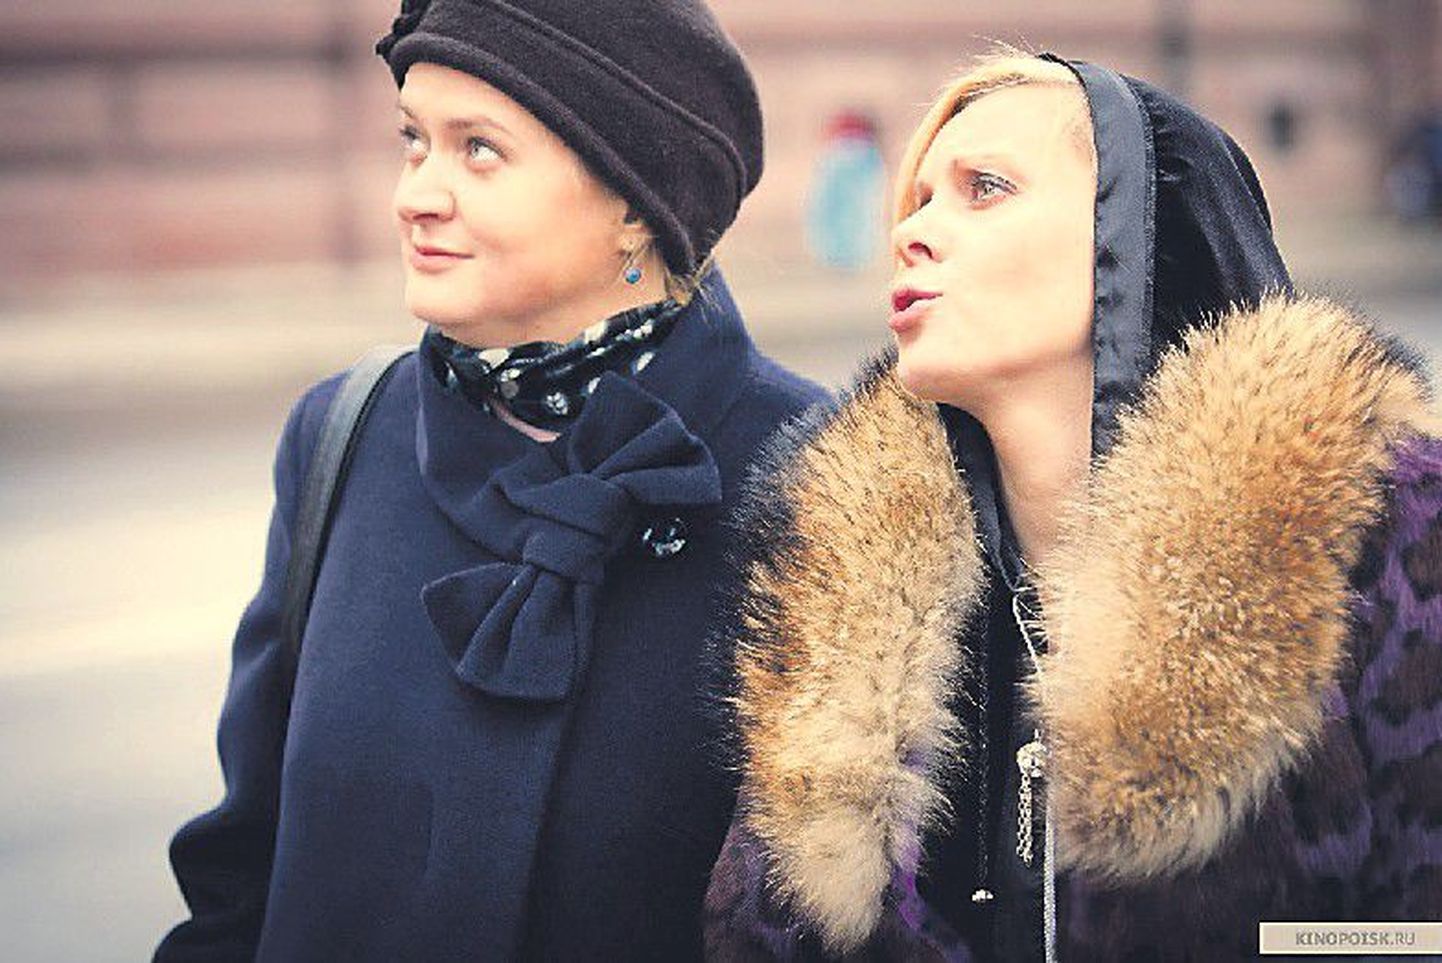 Главные герои фильма "Кококо": Лиза (Анна Михалкова) и Вика (Яна Троянова) сошлись от скуки и, в конце концов, возненавидели друг друга.